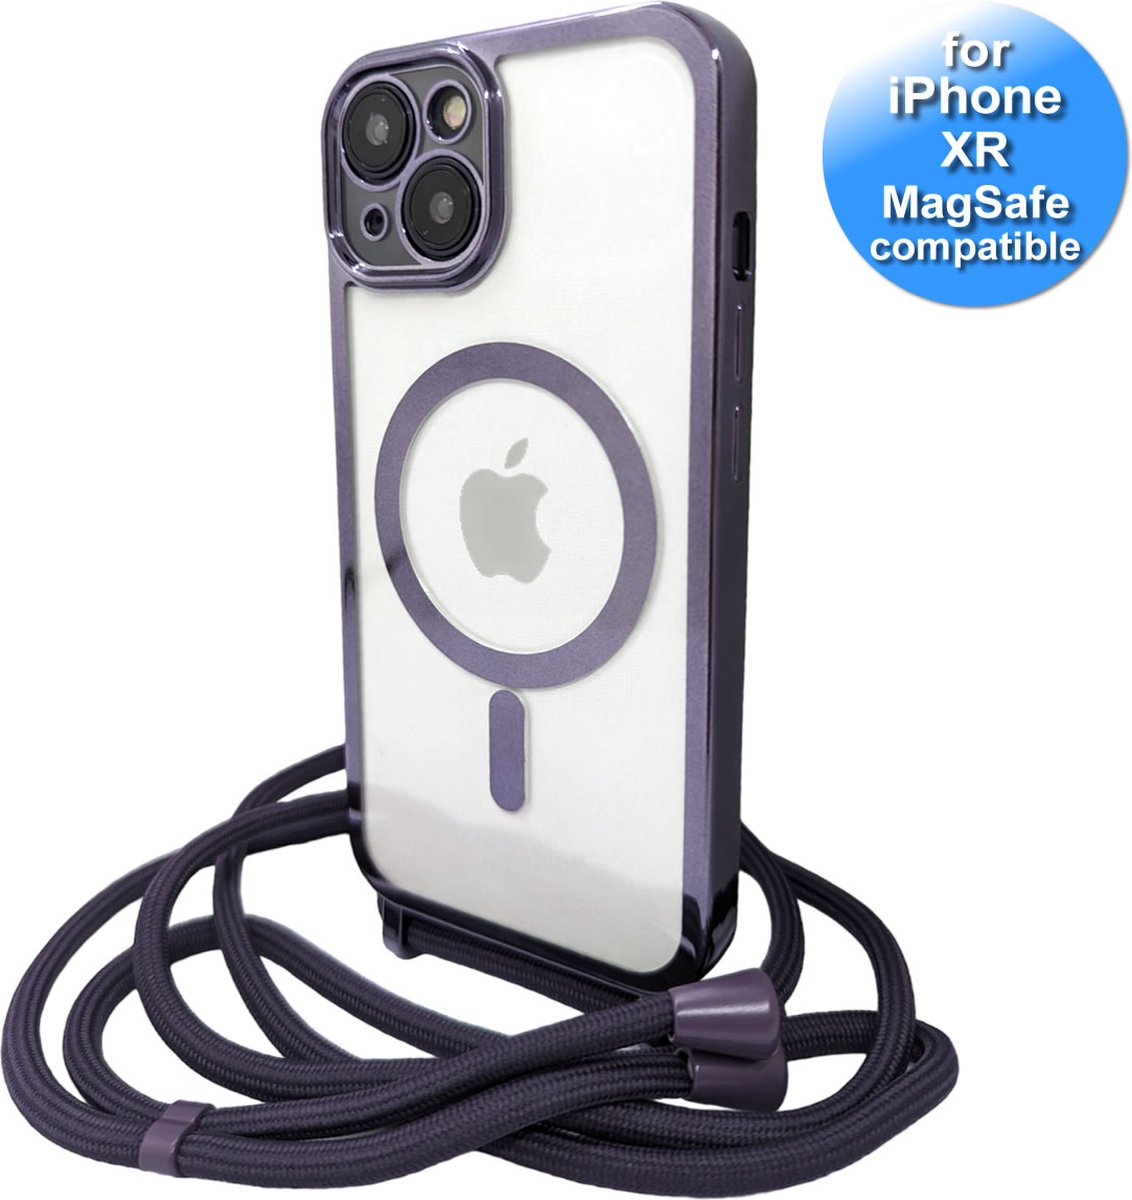 Hoesje met Koord geschikt voor de iPhone Xr- met sterke magneetring geschikt voor MagSafe laders - extra Lens bescherming - Transparant met Paars